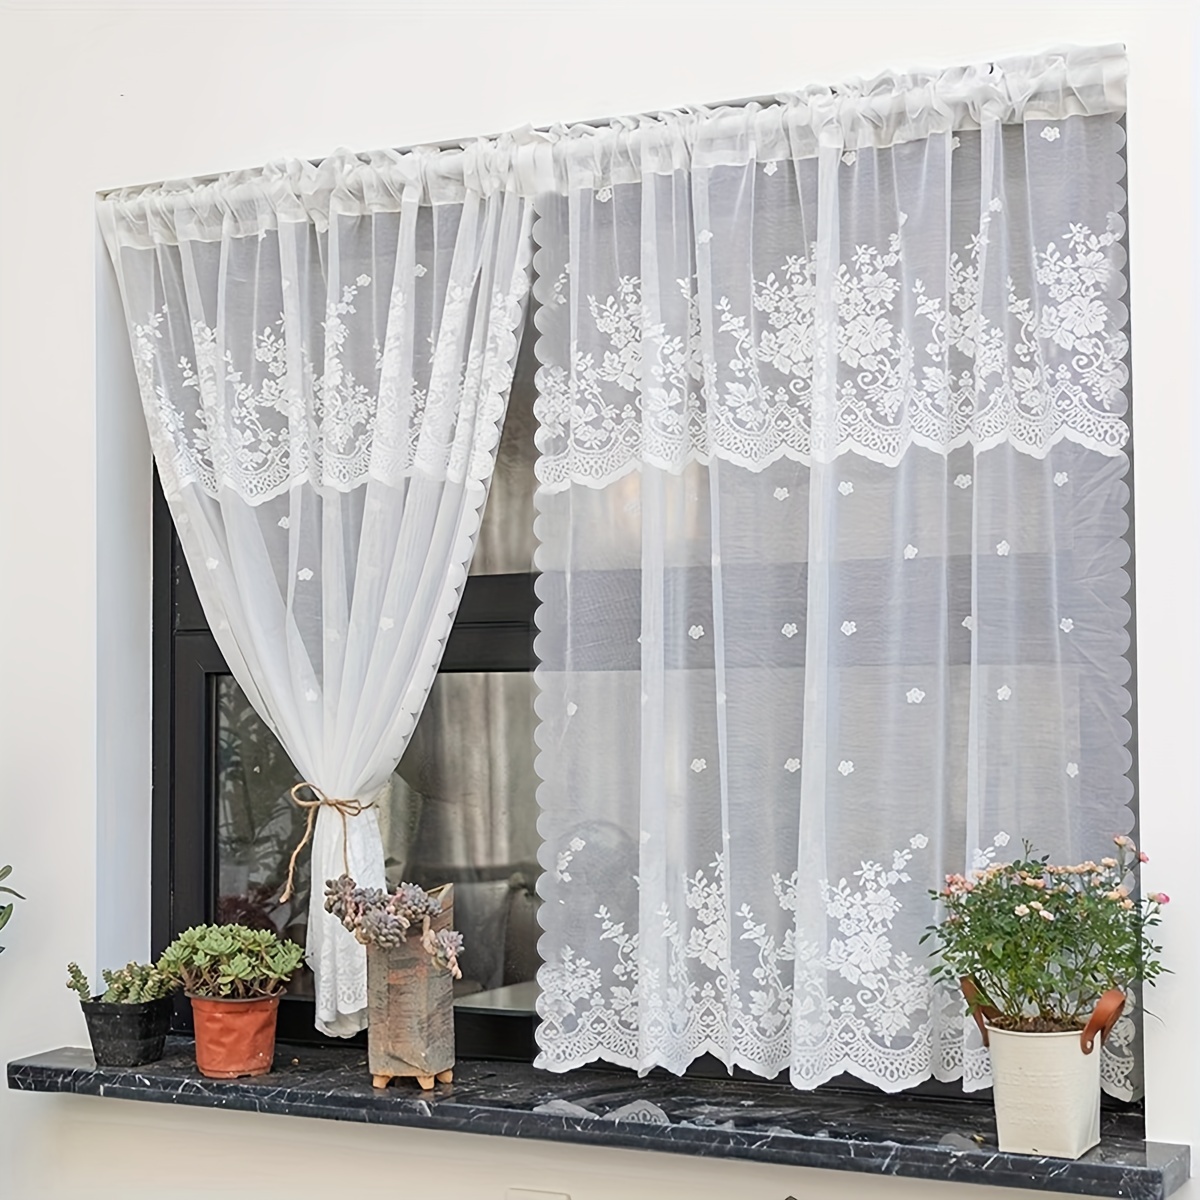  YJKDM Corta/cortina de partición, Cocina/Café medio cortina  puerta cortina, Bowknot/Shading cortina capa cortina : Hogar y Cocina